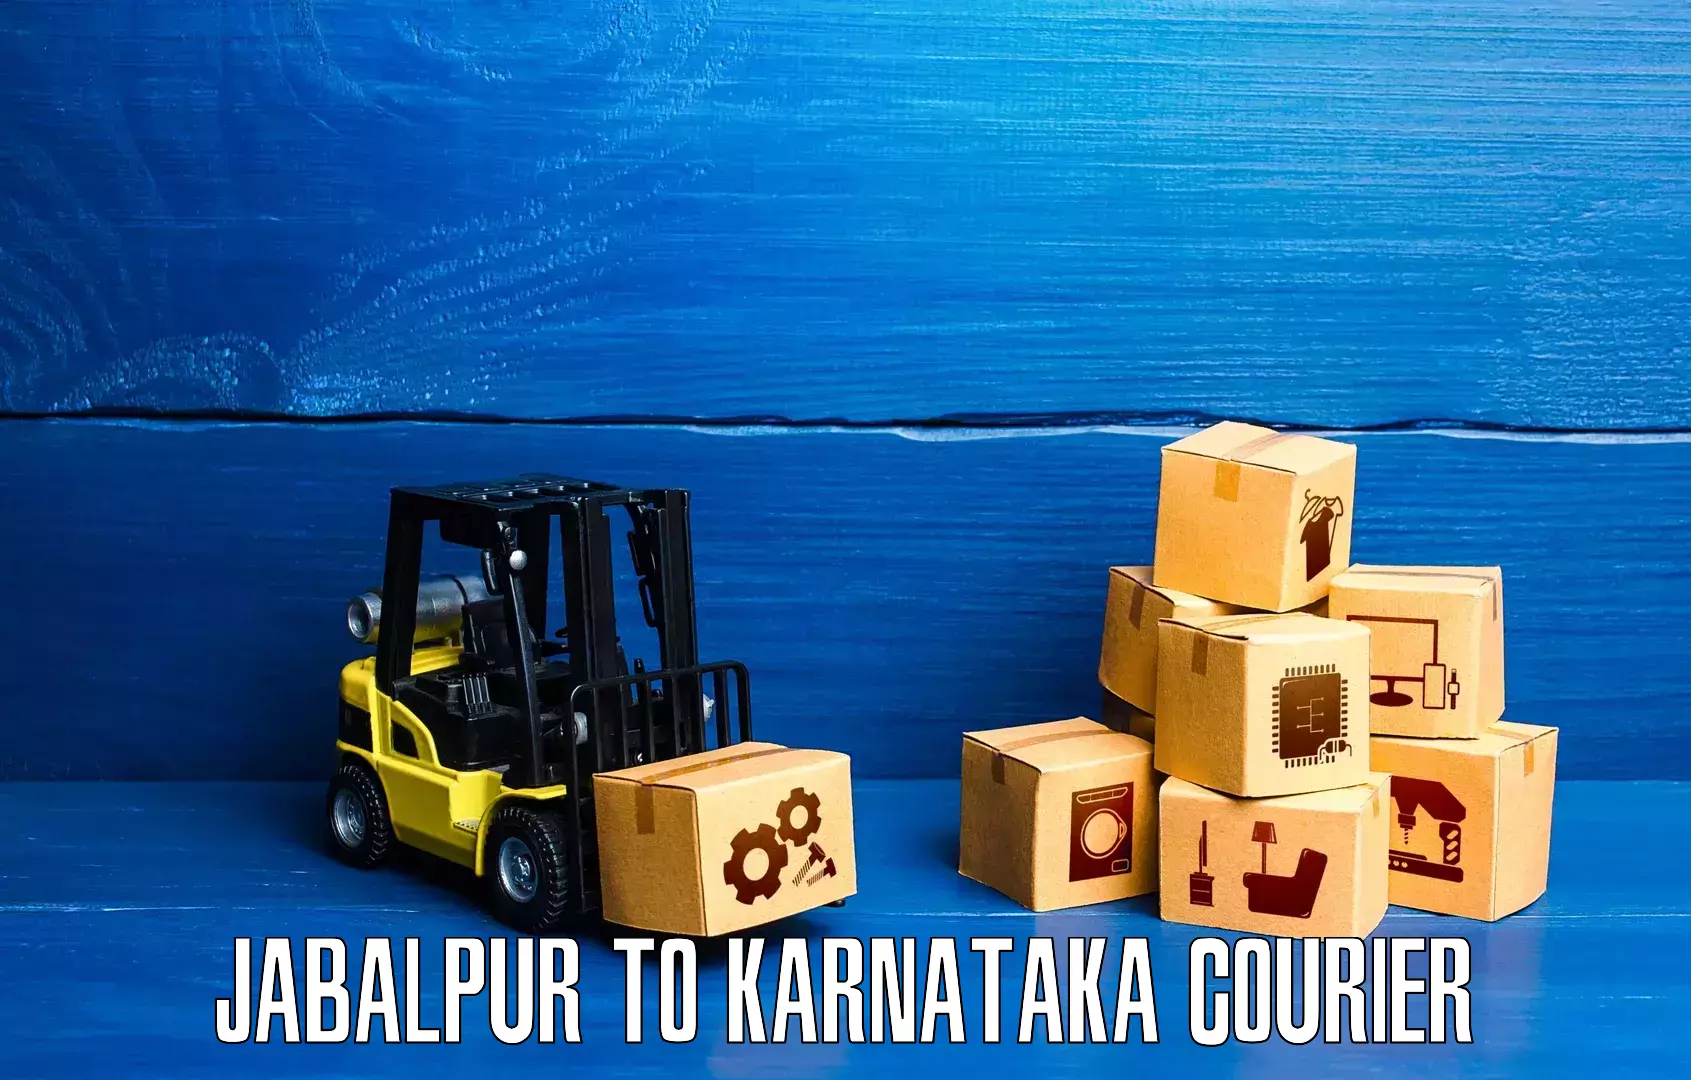 Punctual parcel services Jabalpur to Bangalore